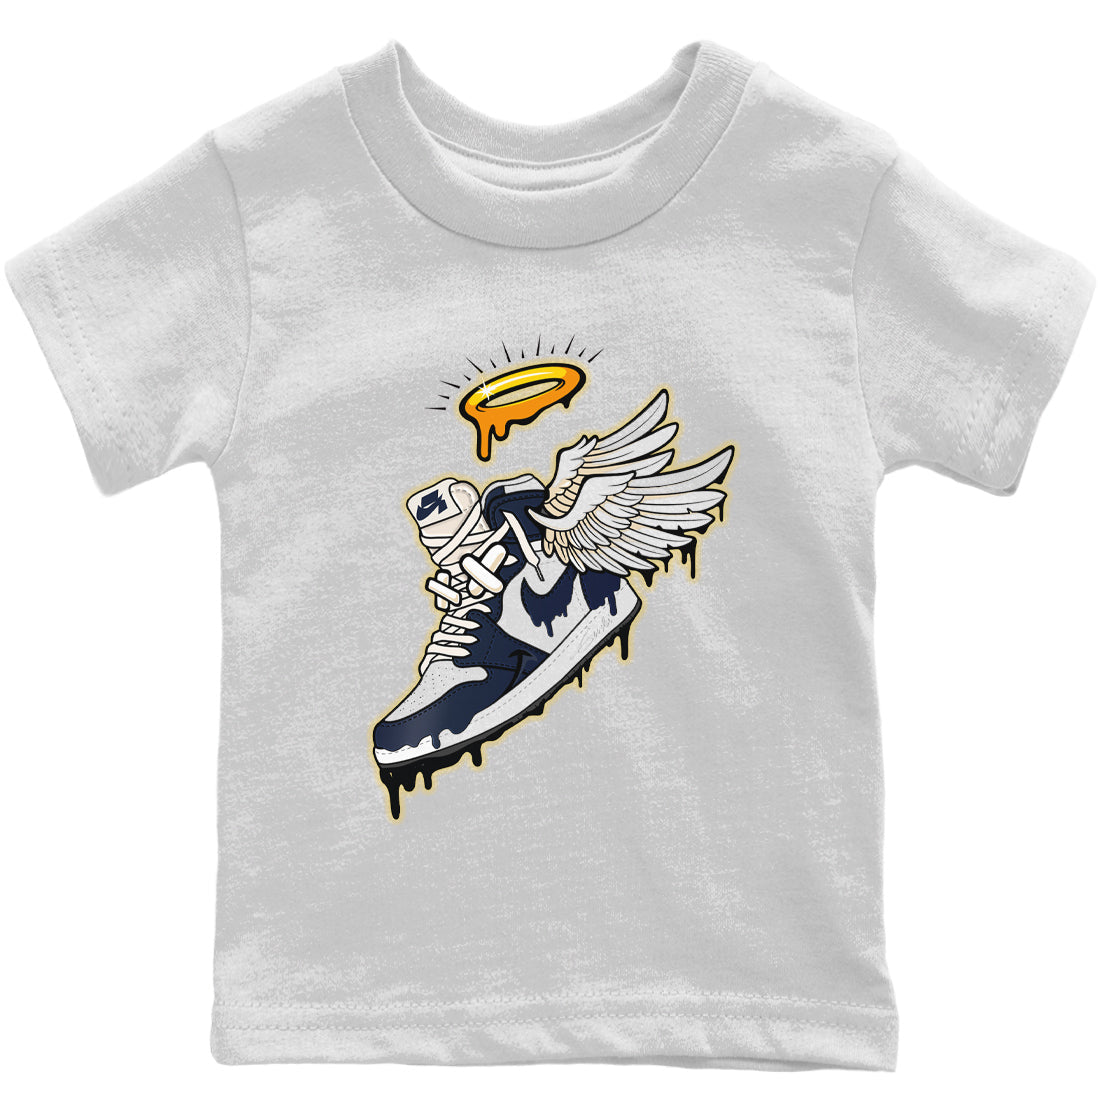 Jordan 1 85 Georgetown Sneaker Match Tees Sneaker Angel Sneaker Tees Jordan 1 85 Georgetown Sneaker Release Tees Kids Shirts